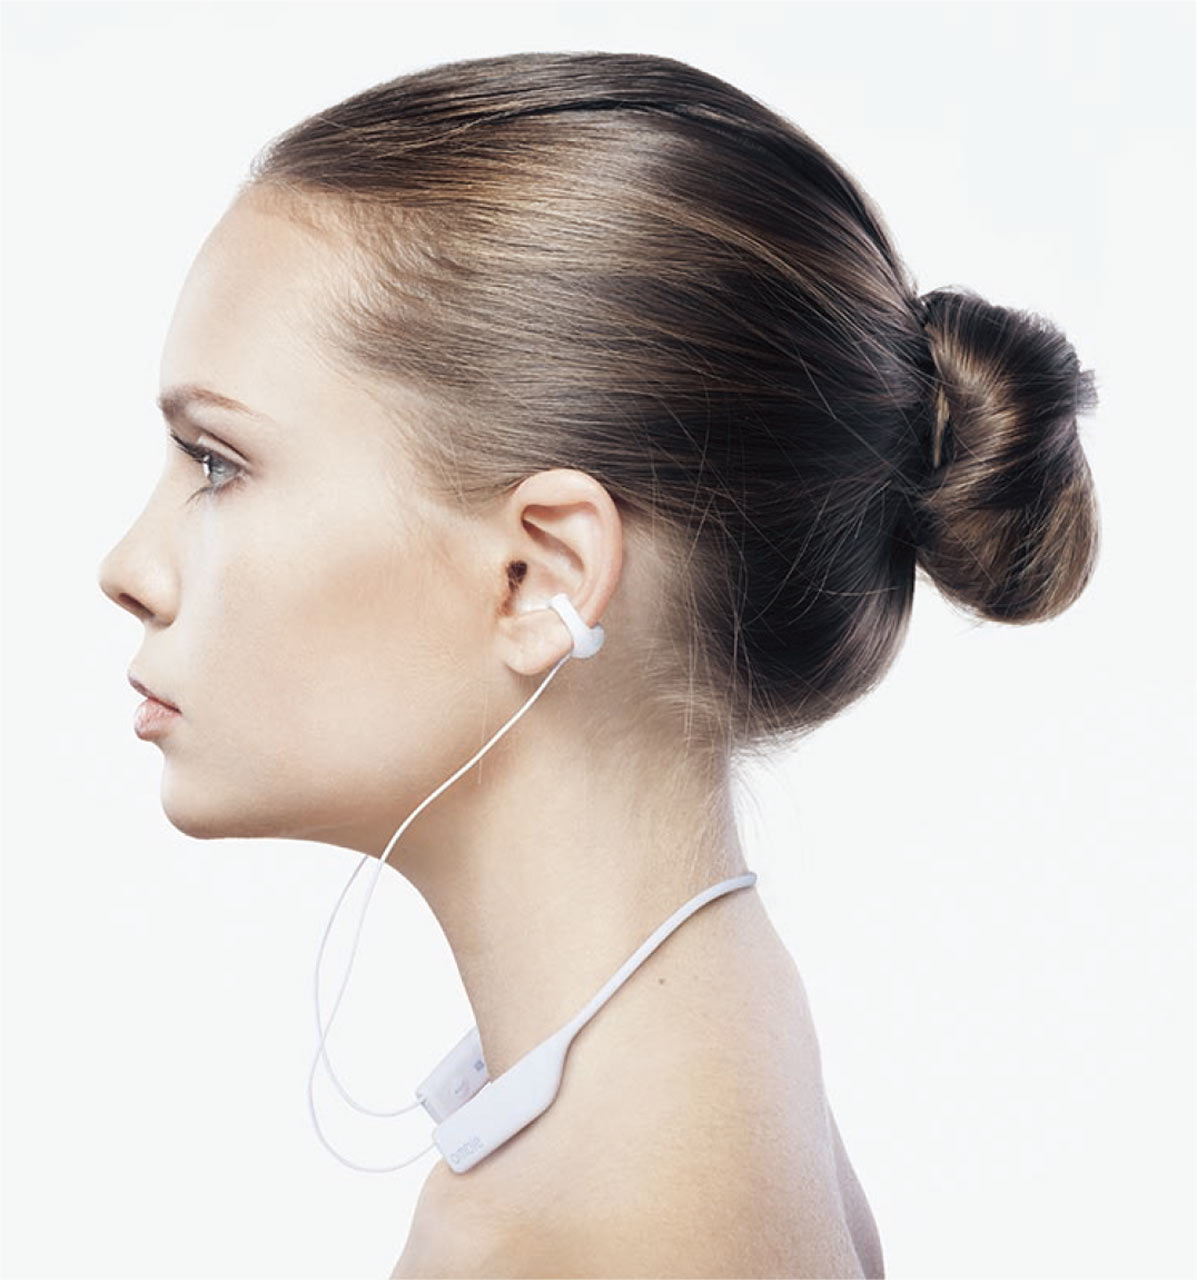 新しい体験価値 ながら聴きイヤホン ワイヤレスモデルが好評 日経クロストレンド